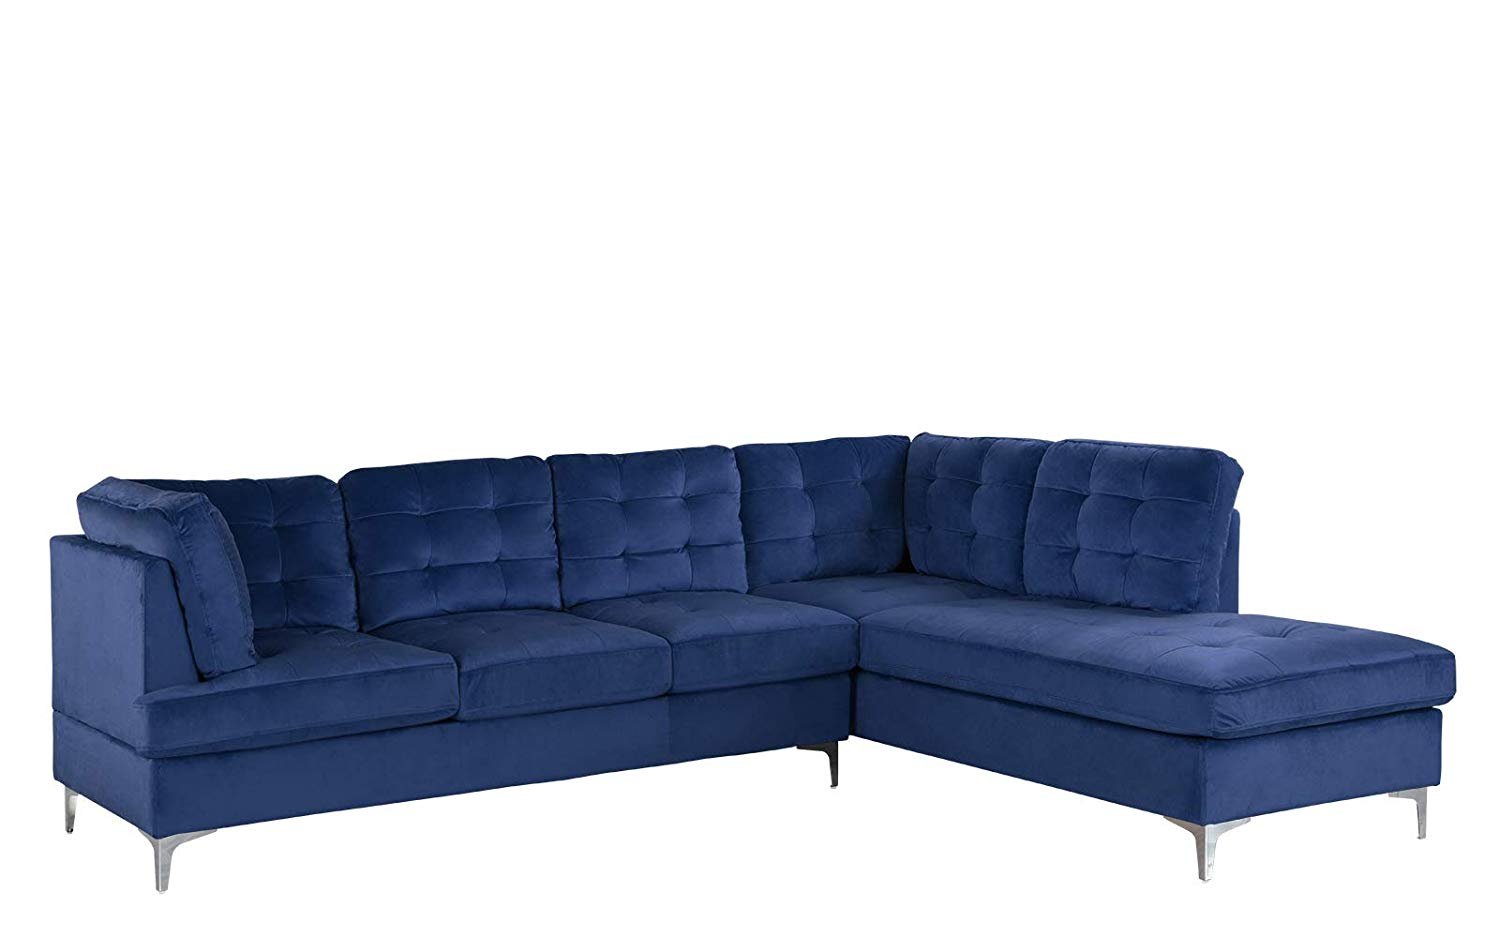 Tufted Velvet 101.1" inch Sectional Sofa, Classic Living Room L-Shape